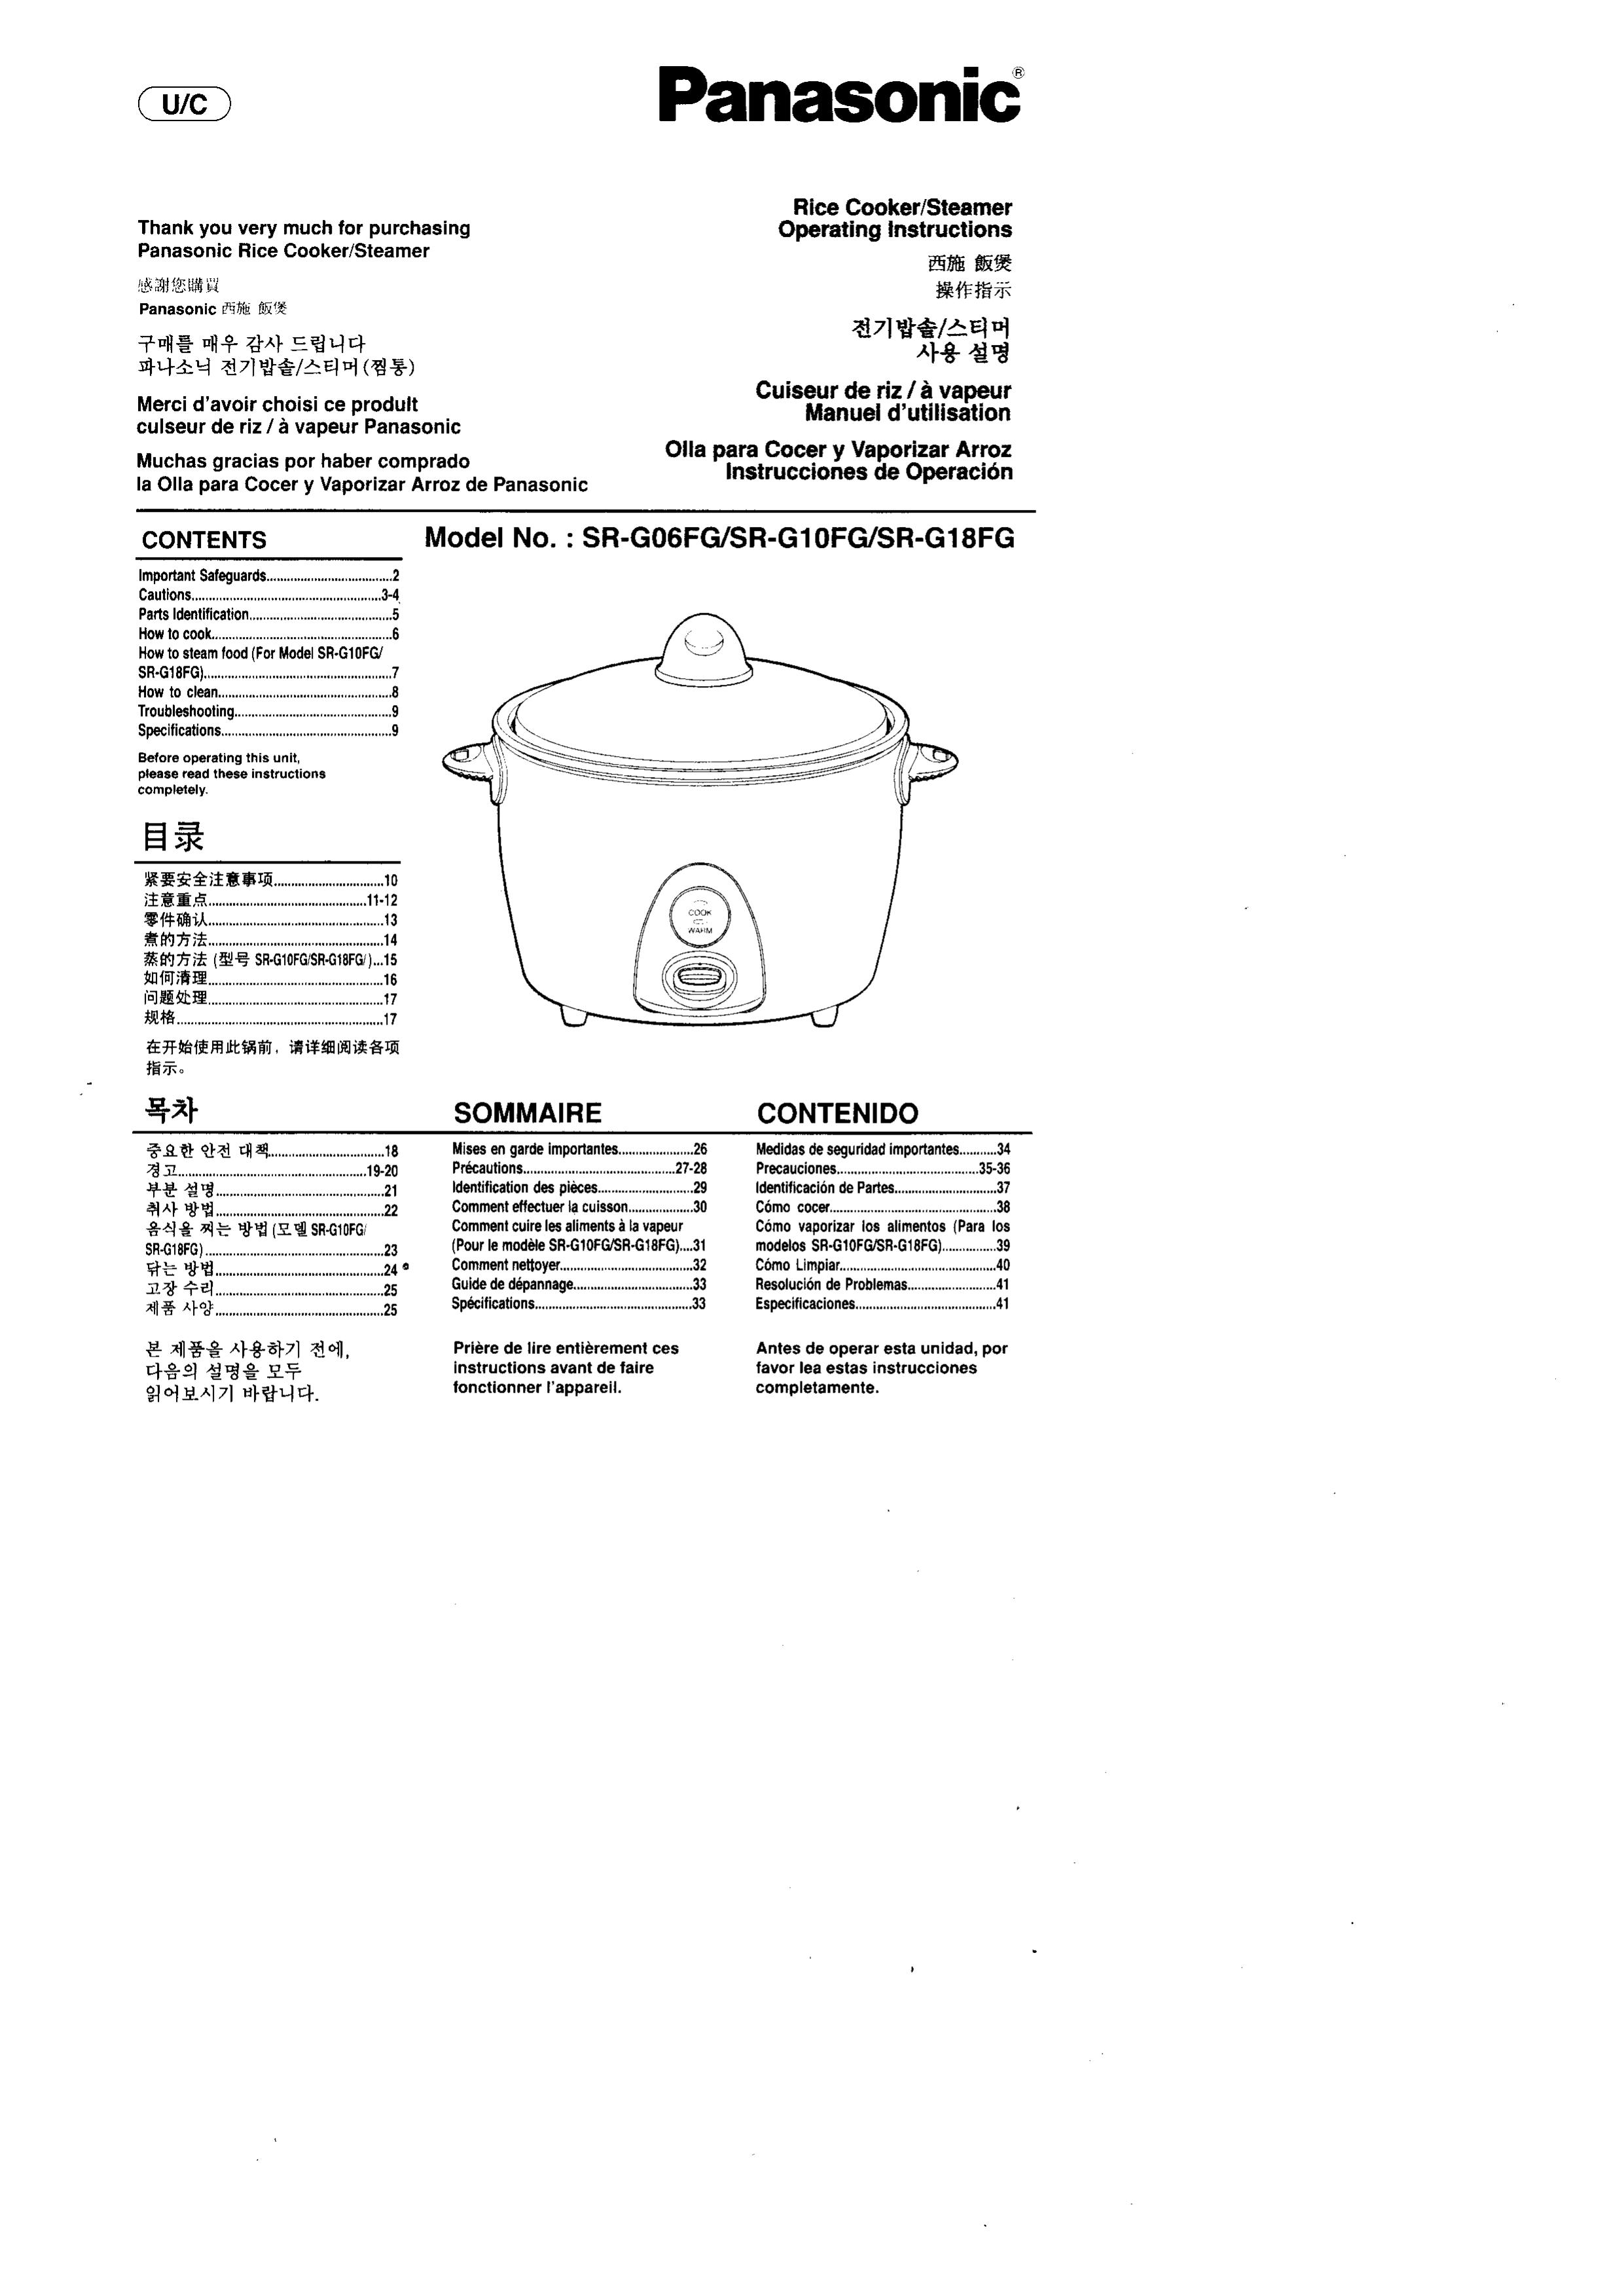 Panasonic SR'GO6FG/SR.G10FG/SR.GI8FG Rice Cooker User Manual